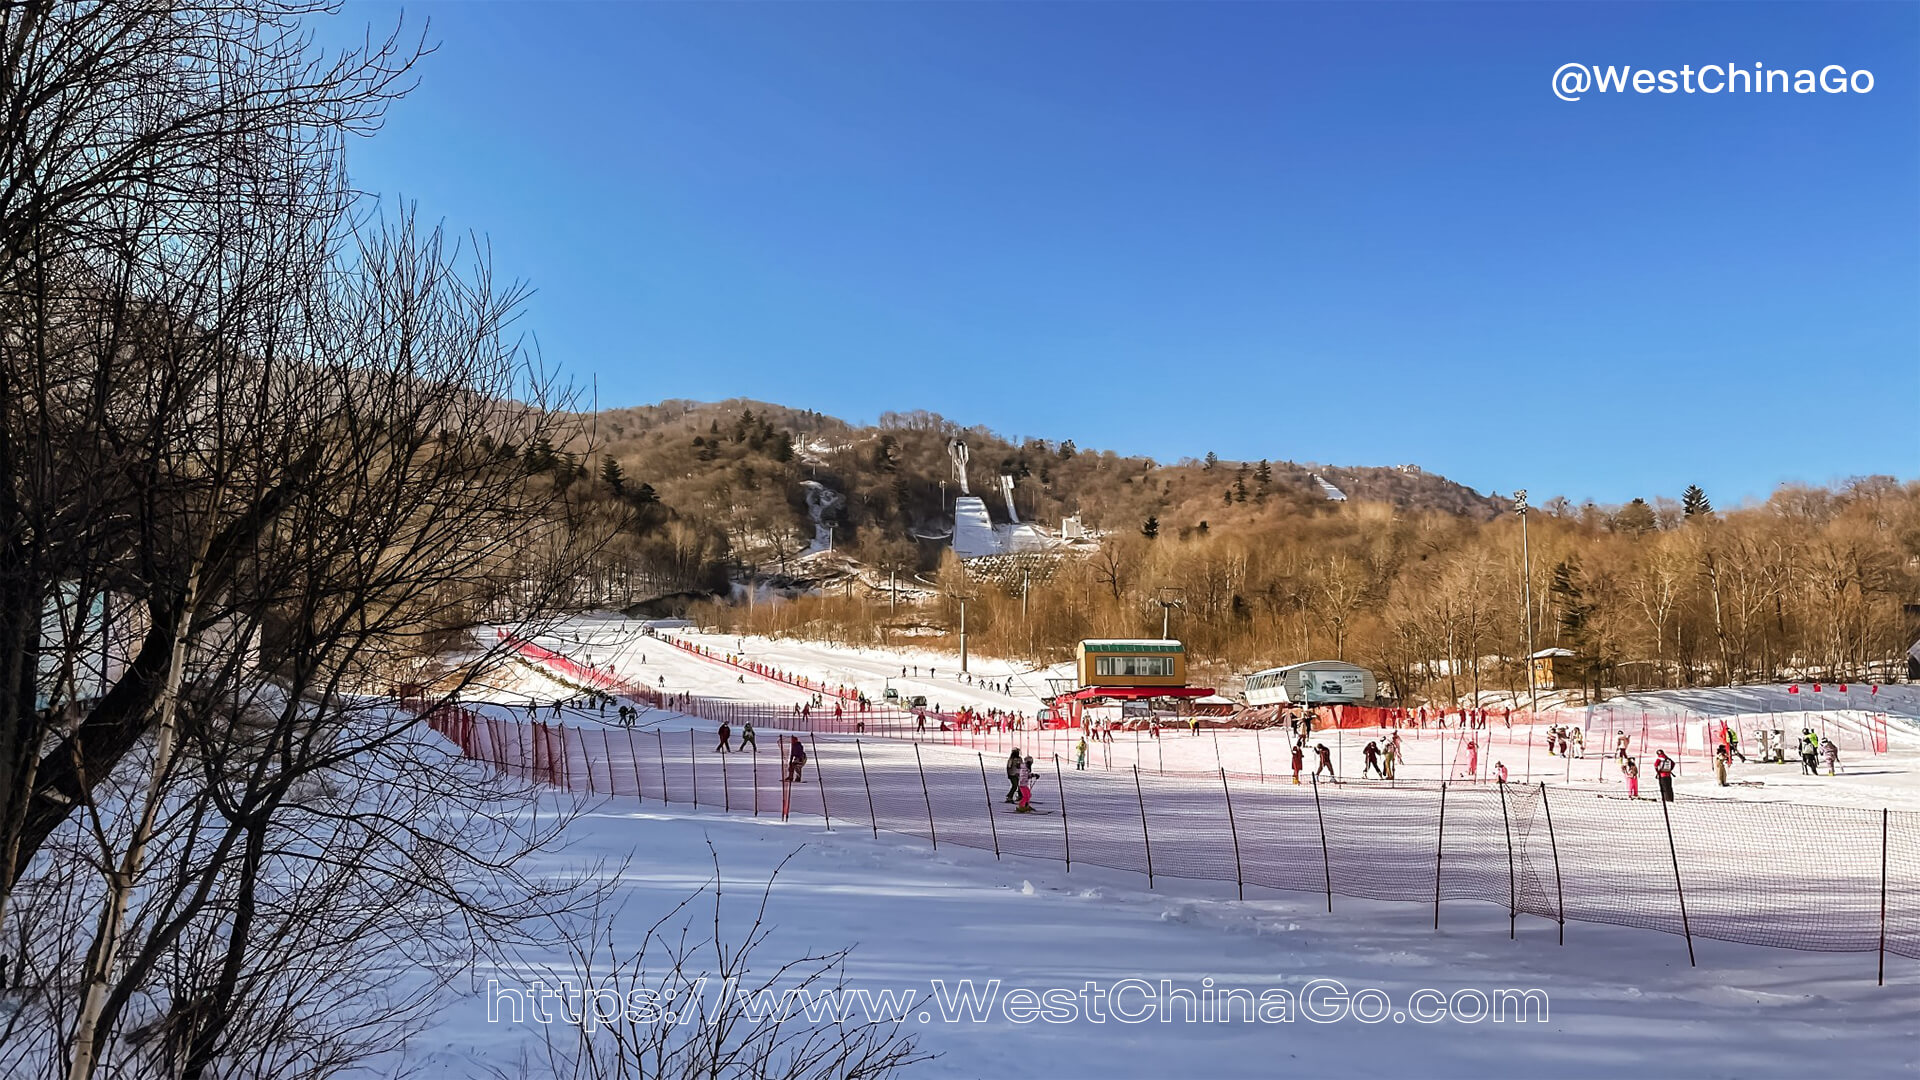 Yabuli Ski Resort